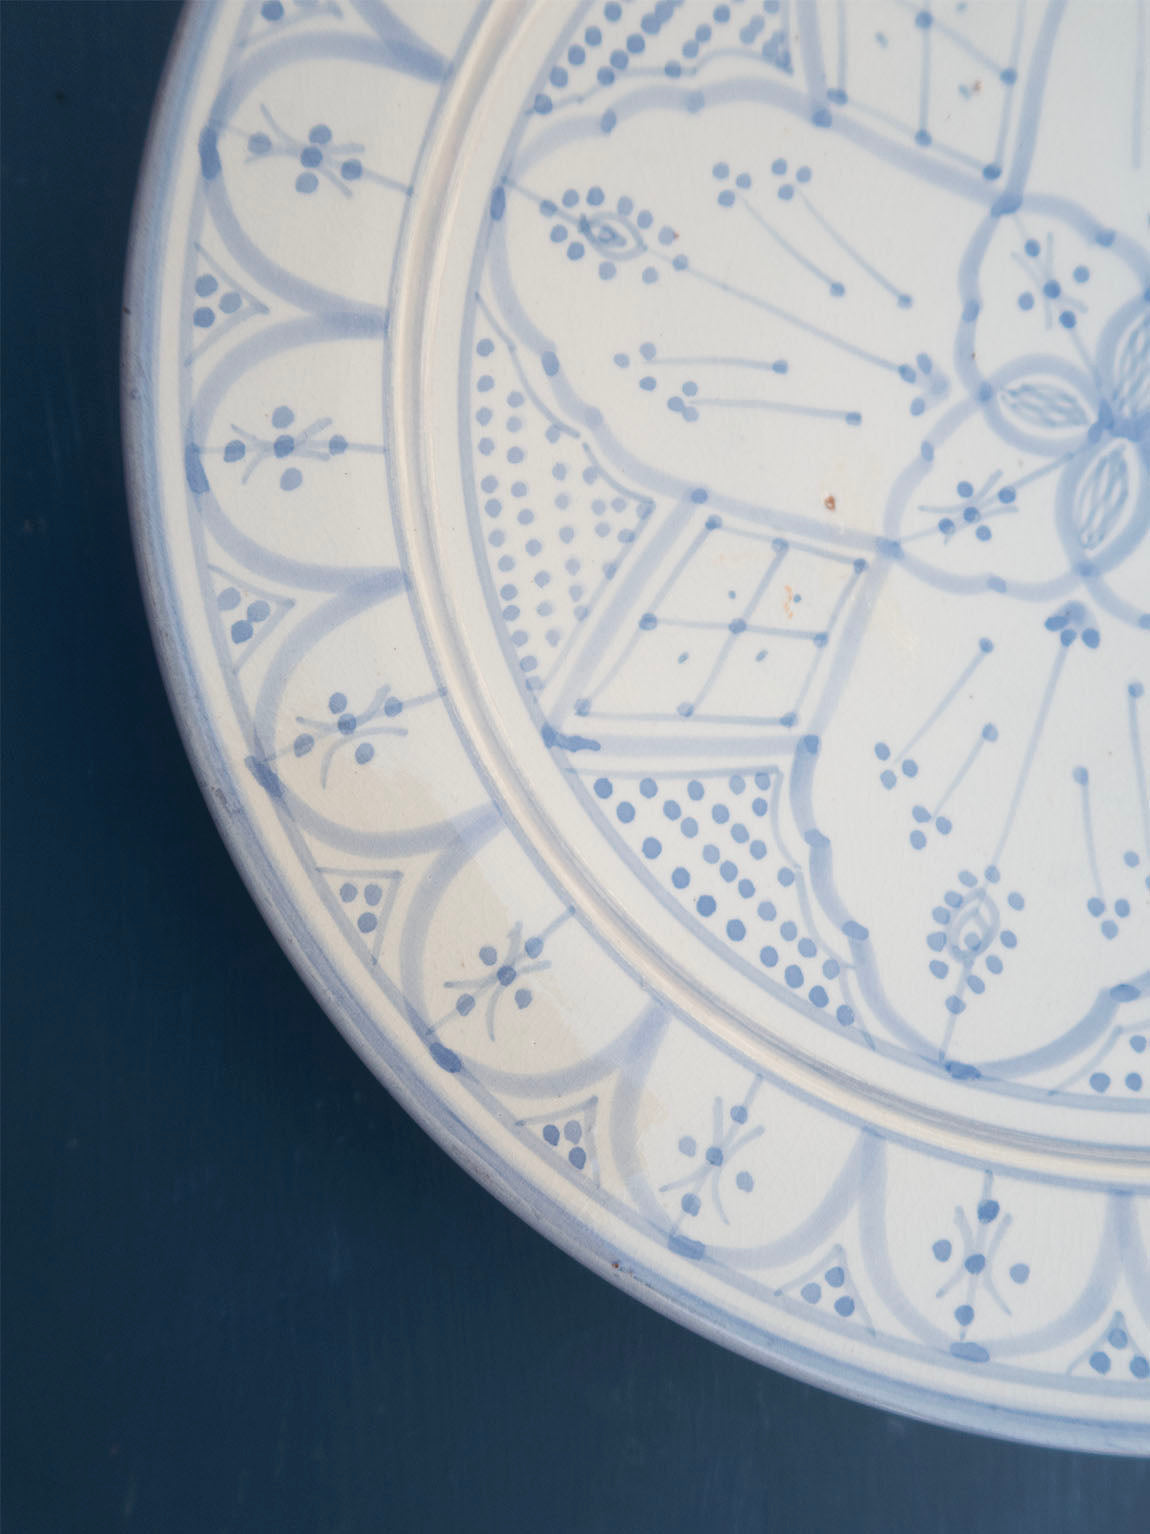 marokkanskkeramik-marokko-keramik